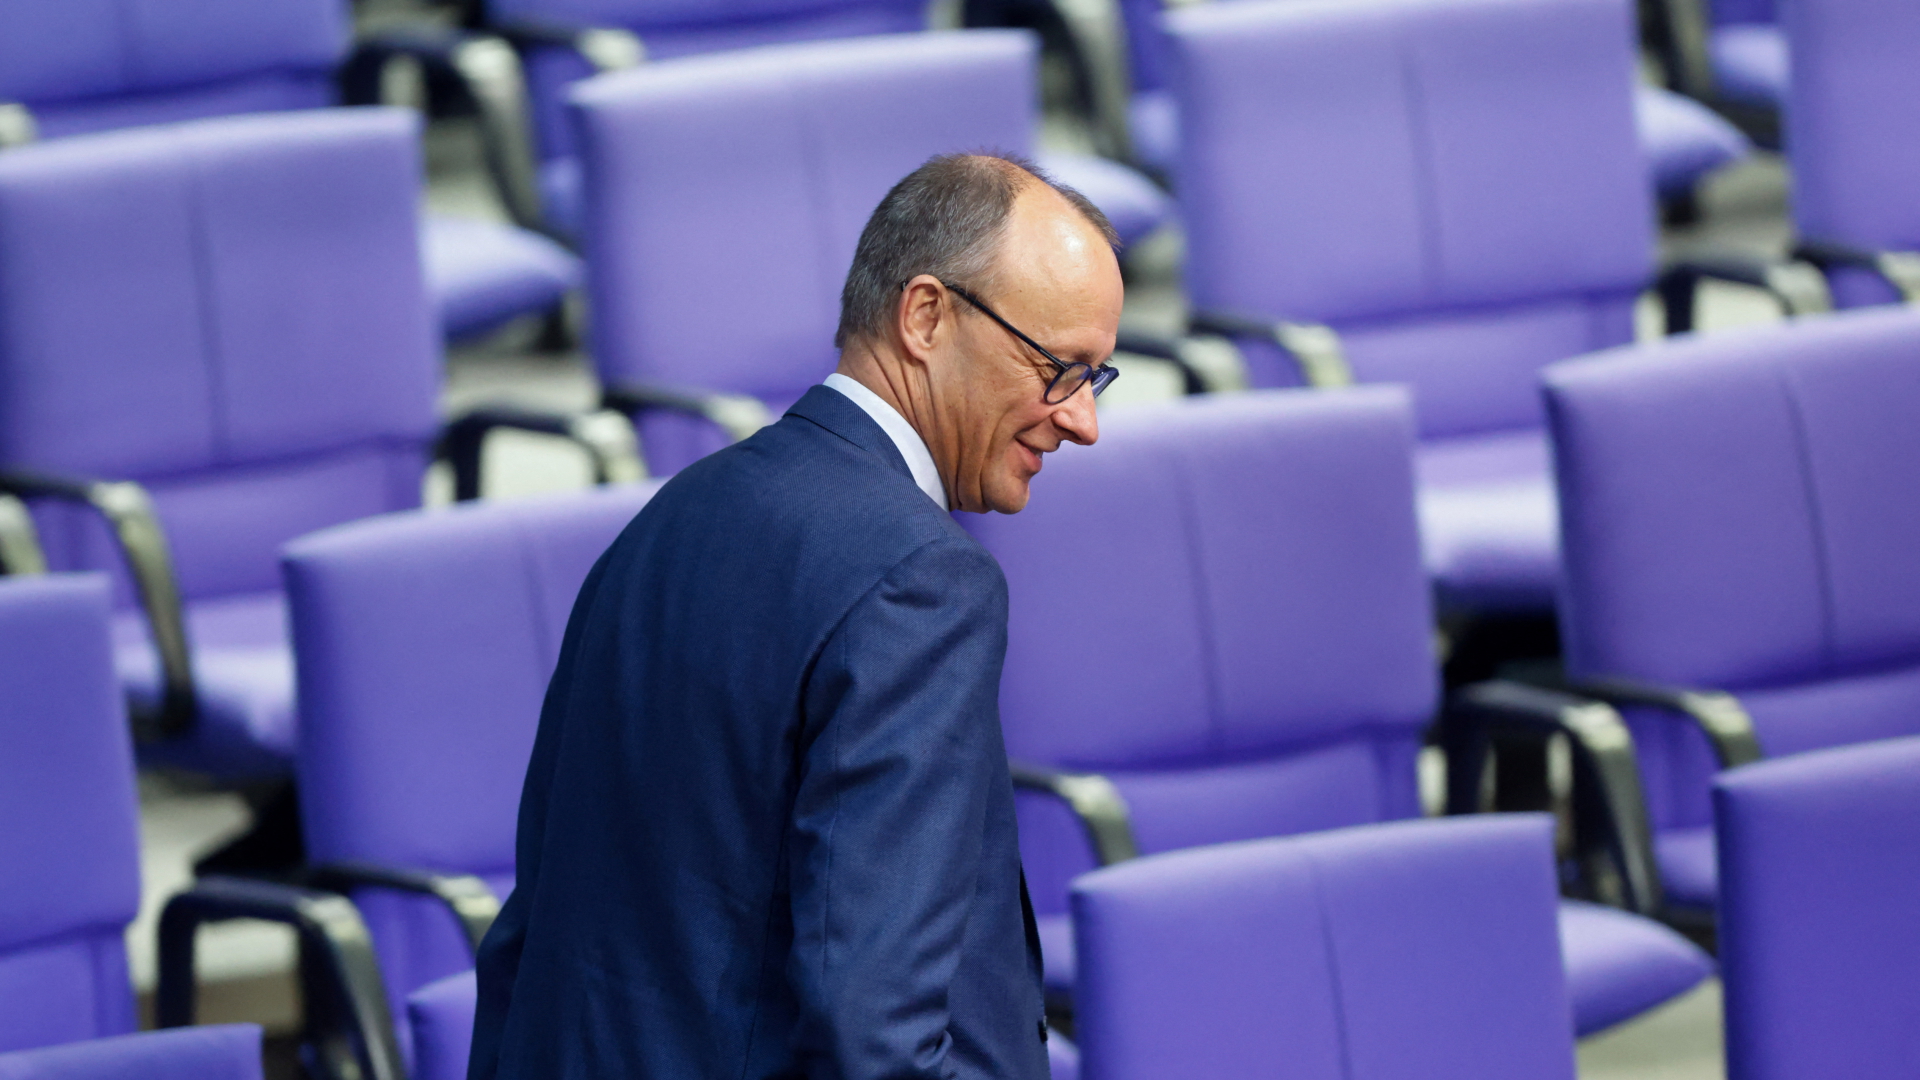 Union legt Vorschlag vor: Nächste Idee für kleineren Bundestag